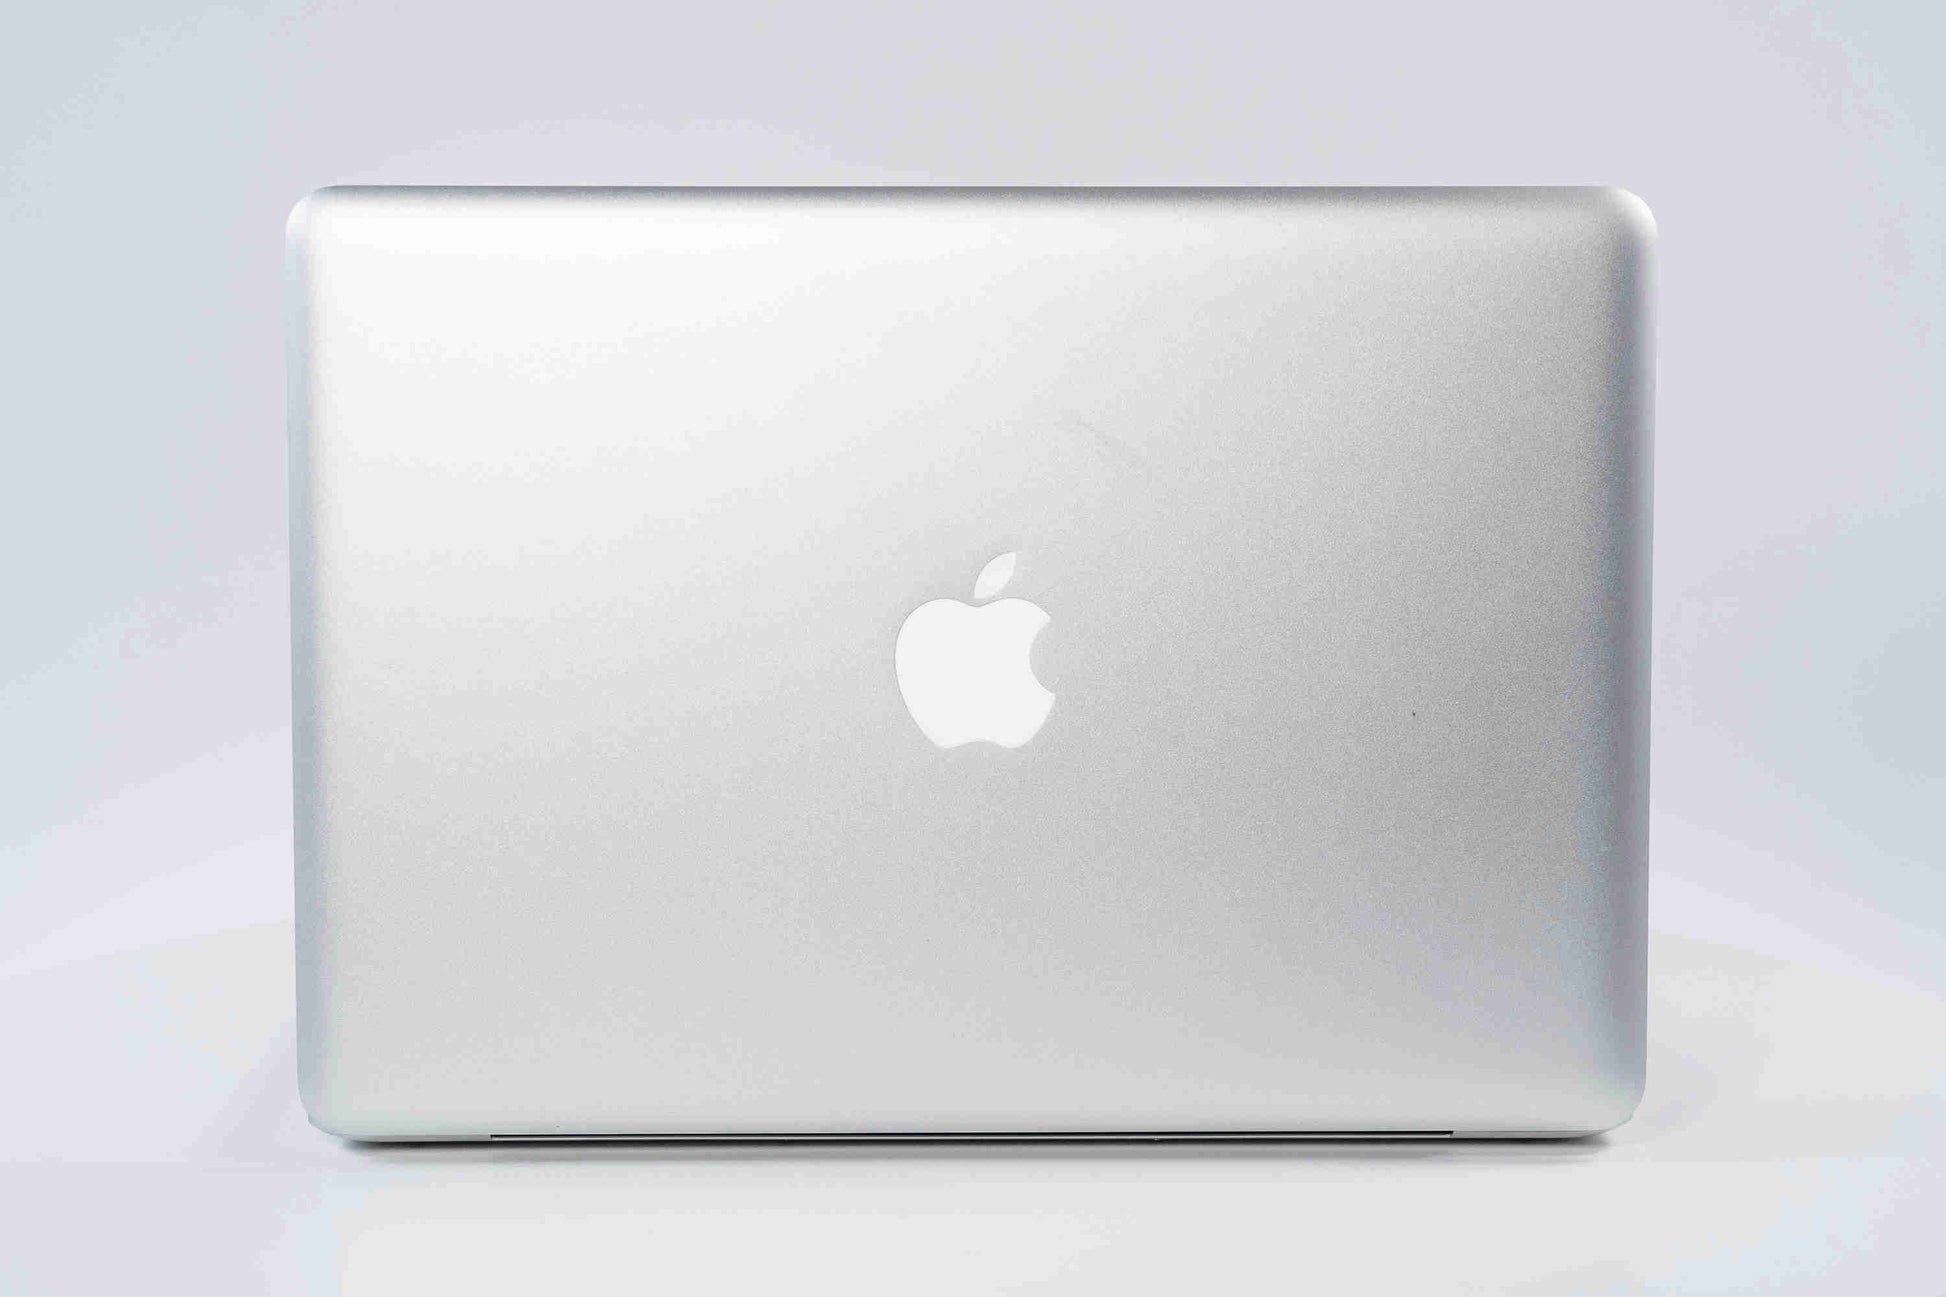 Apple MacBook Pro (13-inch Mid 2012) 2.9 GHz i7-3520M 8GB 750GB HDD (Silver)